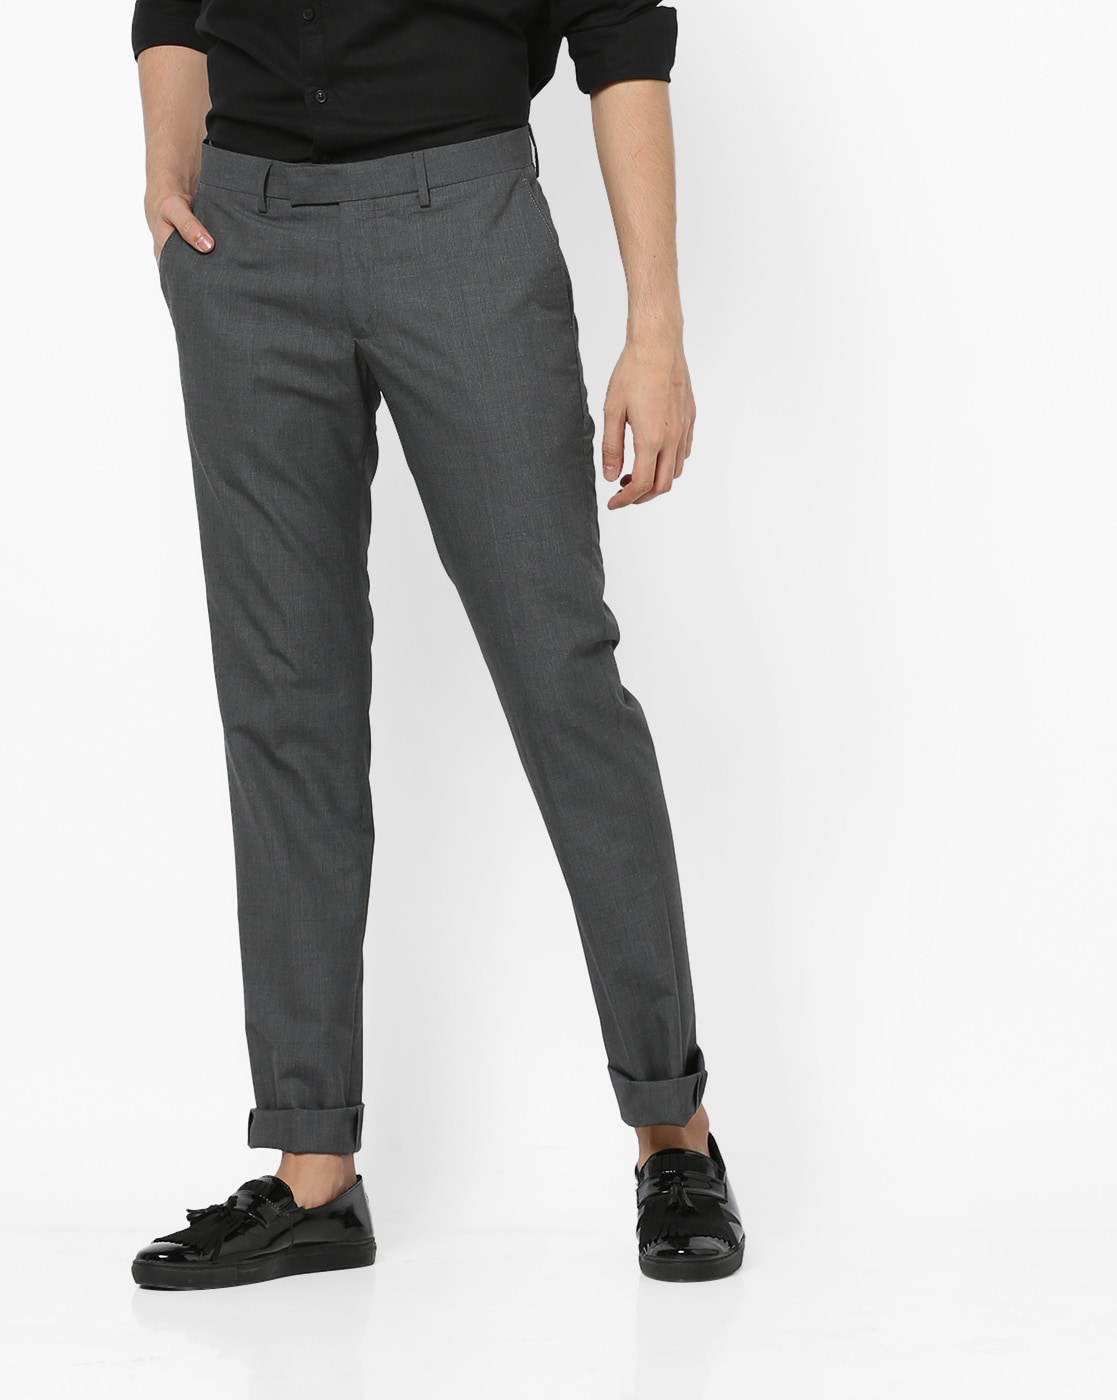 Details 129+ grey colour trouser best